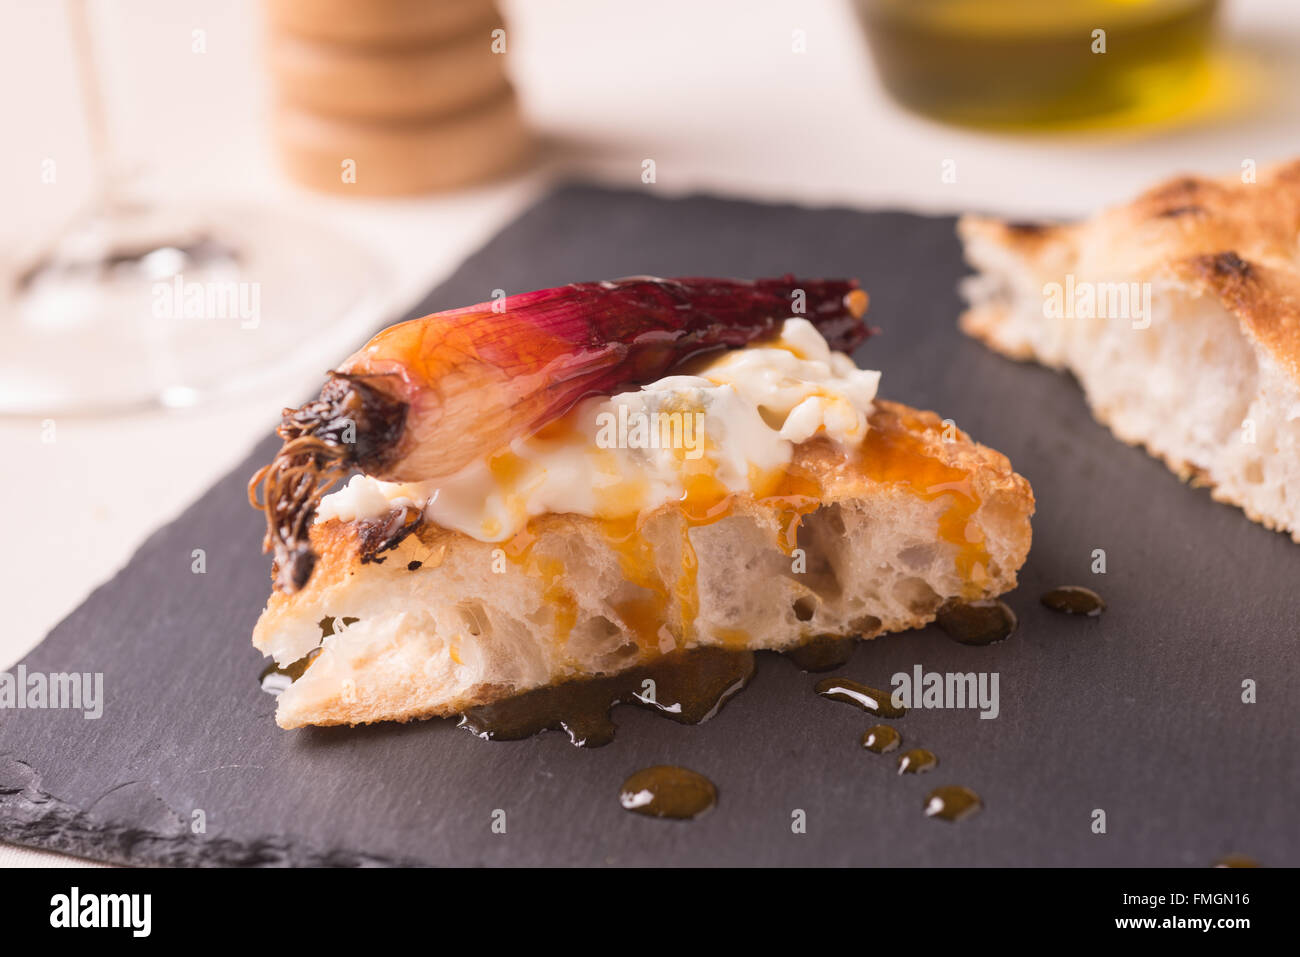 Scheibe der Pizza Gourmet mit Gorgonzola Käse, roten Zwiebeln gedünstet auf Balsamico Winegar und orange Sirup Stockfoto